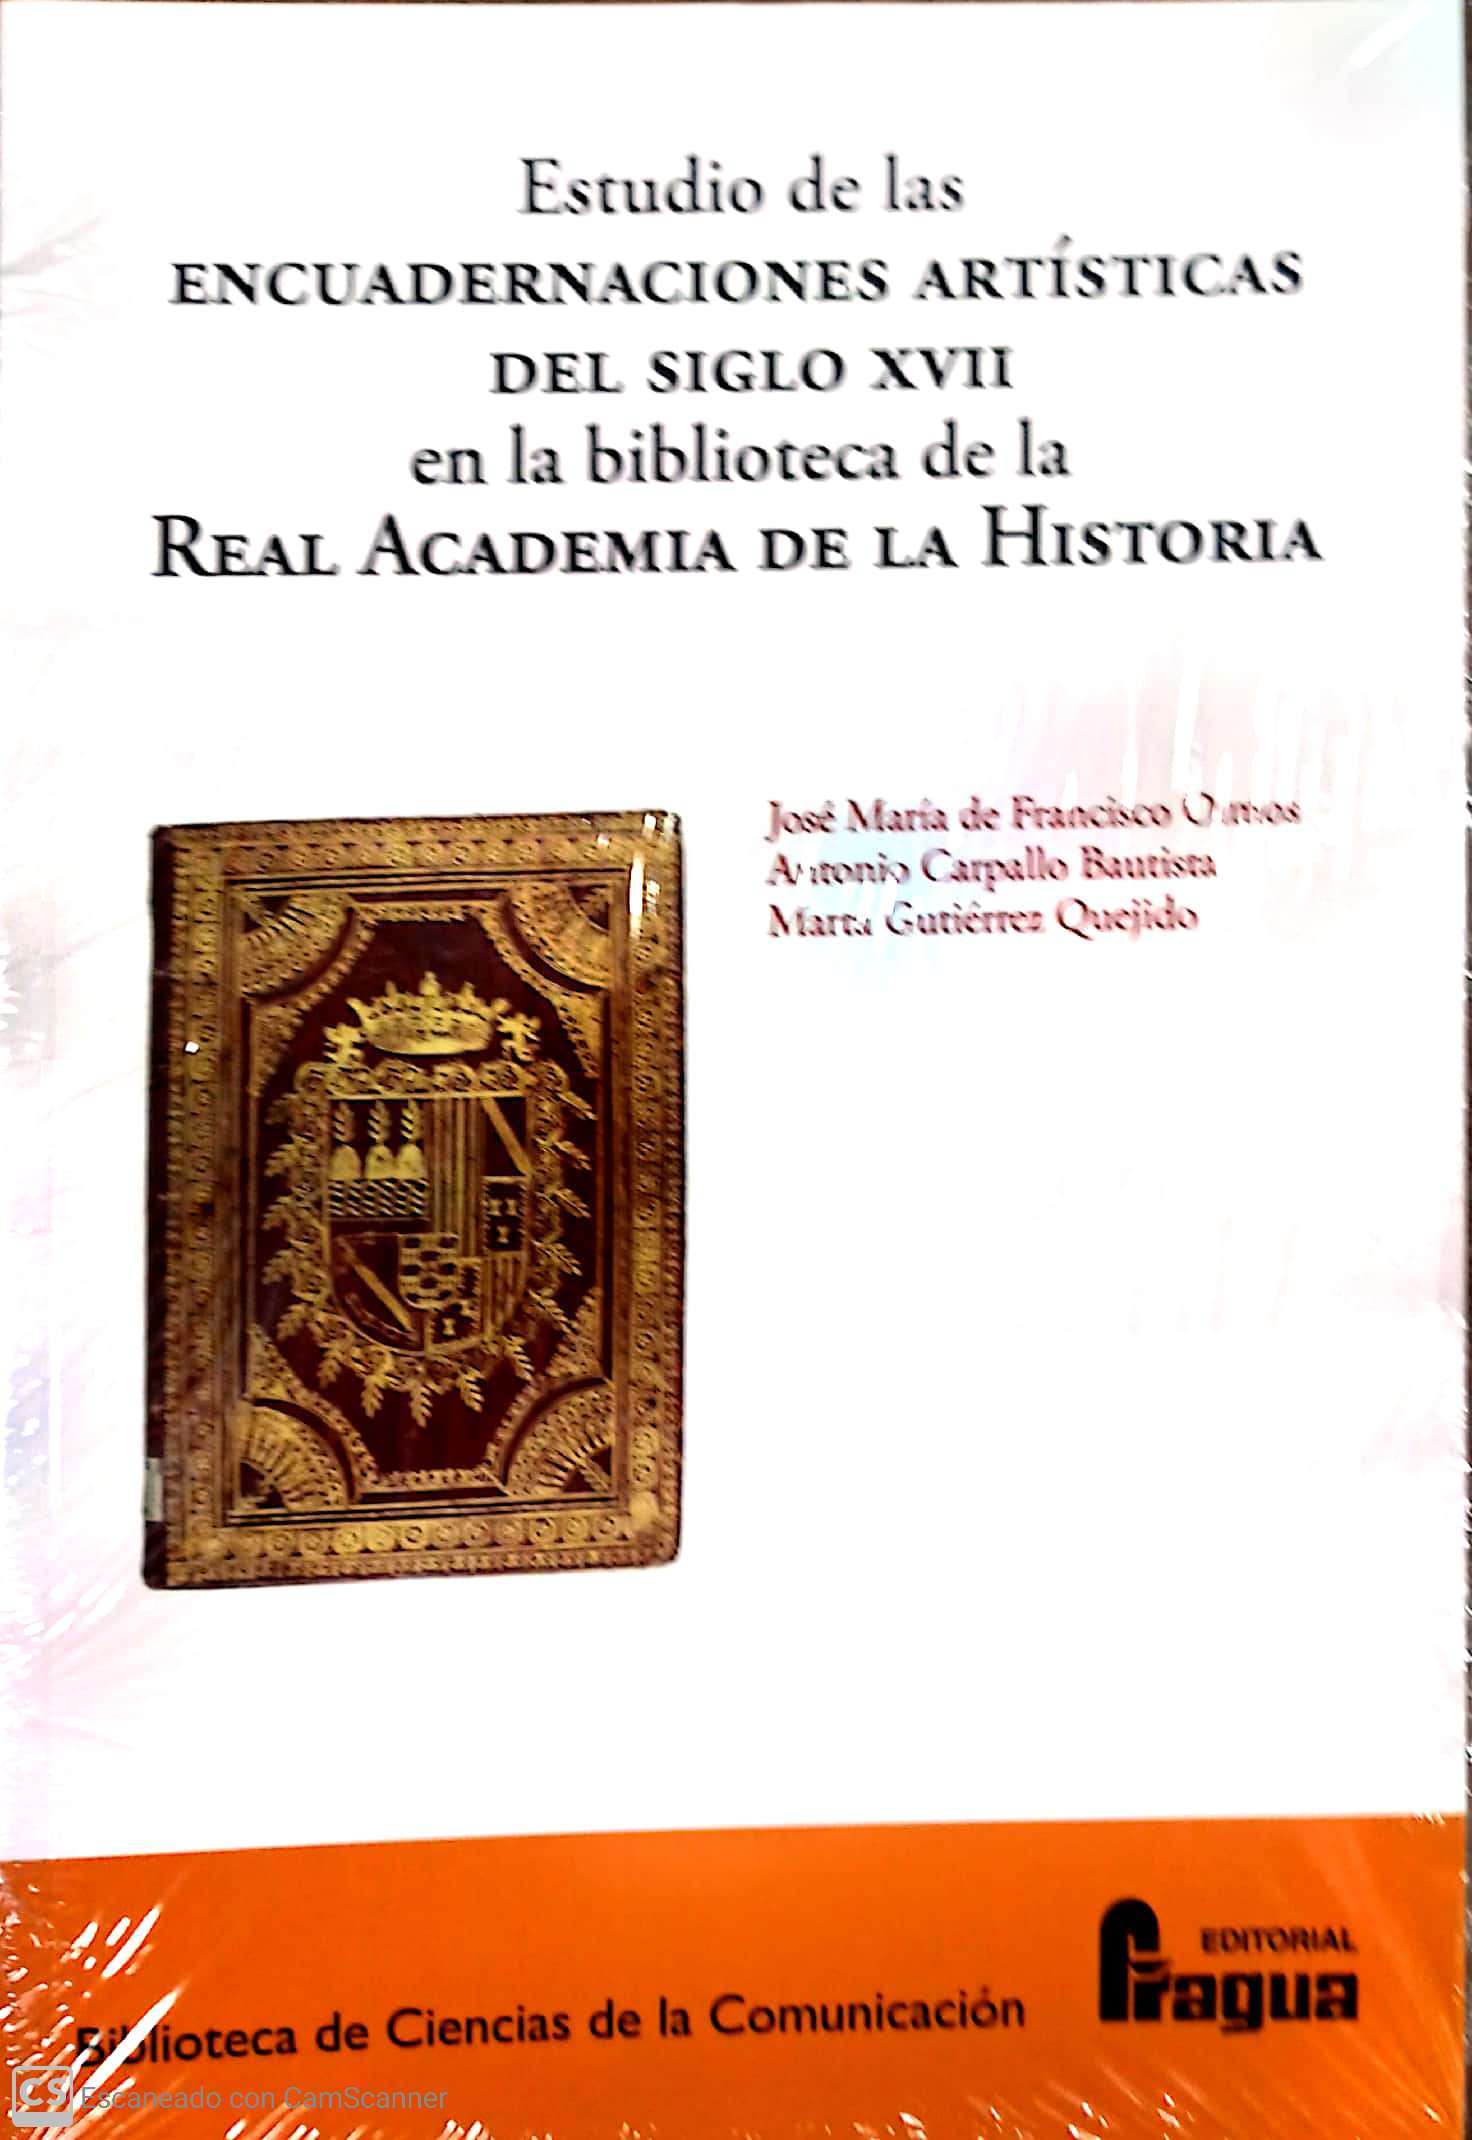 Estudio de las encuadernaciones artísticas del siglo XVII em la biblioteca de la Real Academia de la Historia